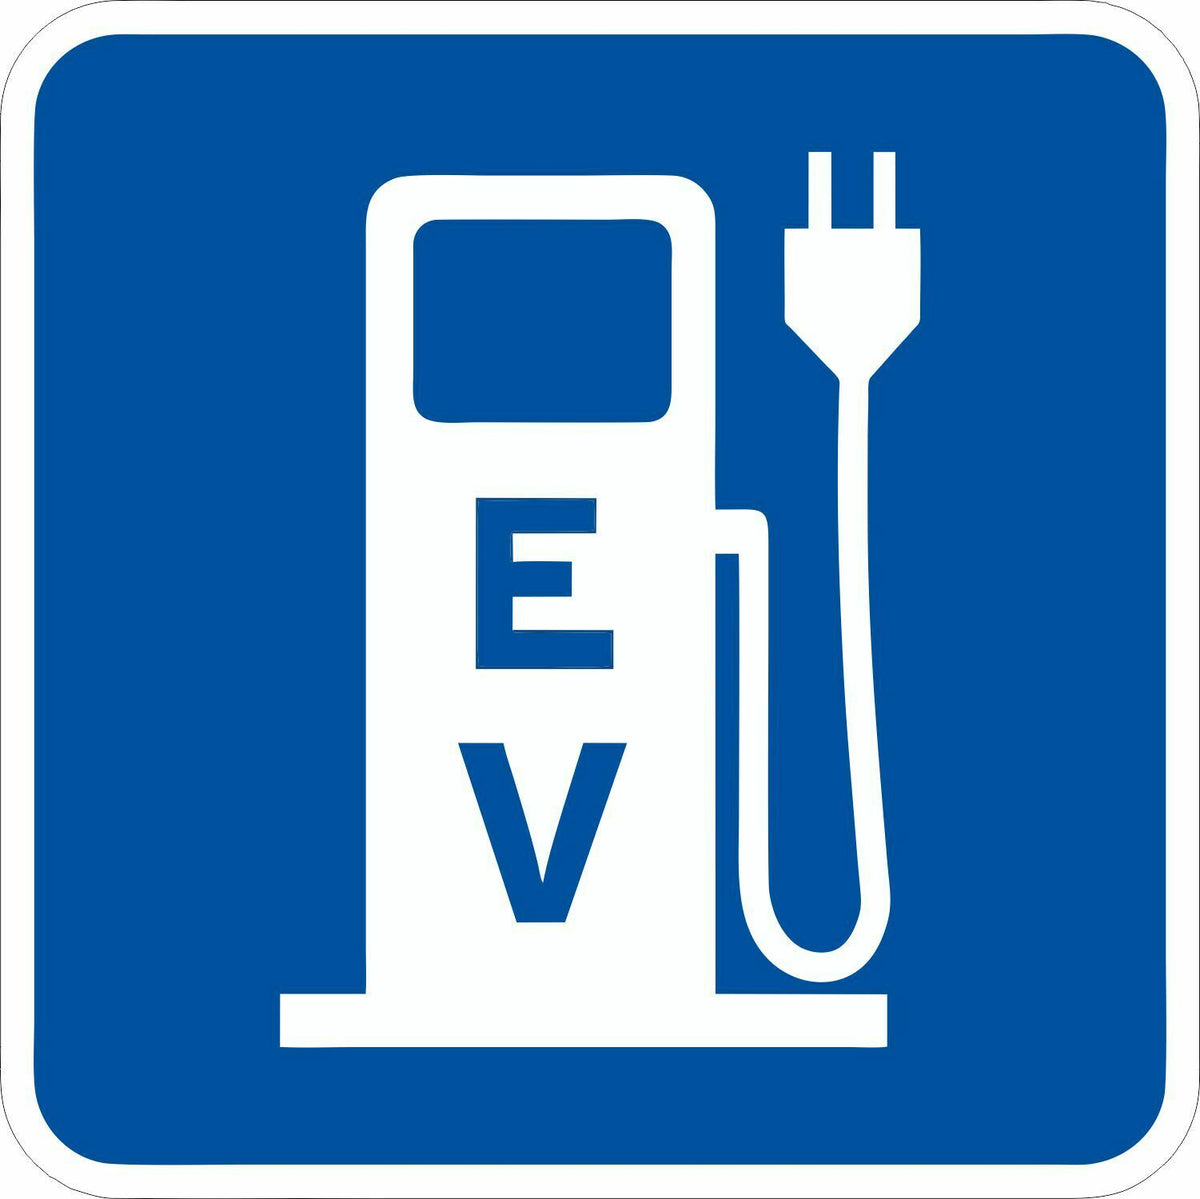 EV Charging Electric Car EV Bumper Sticker Fits Chevrolet Bolt LEAF Tesla BMW i3 - Powercall Sirens LLC